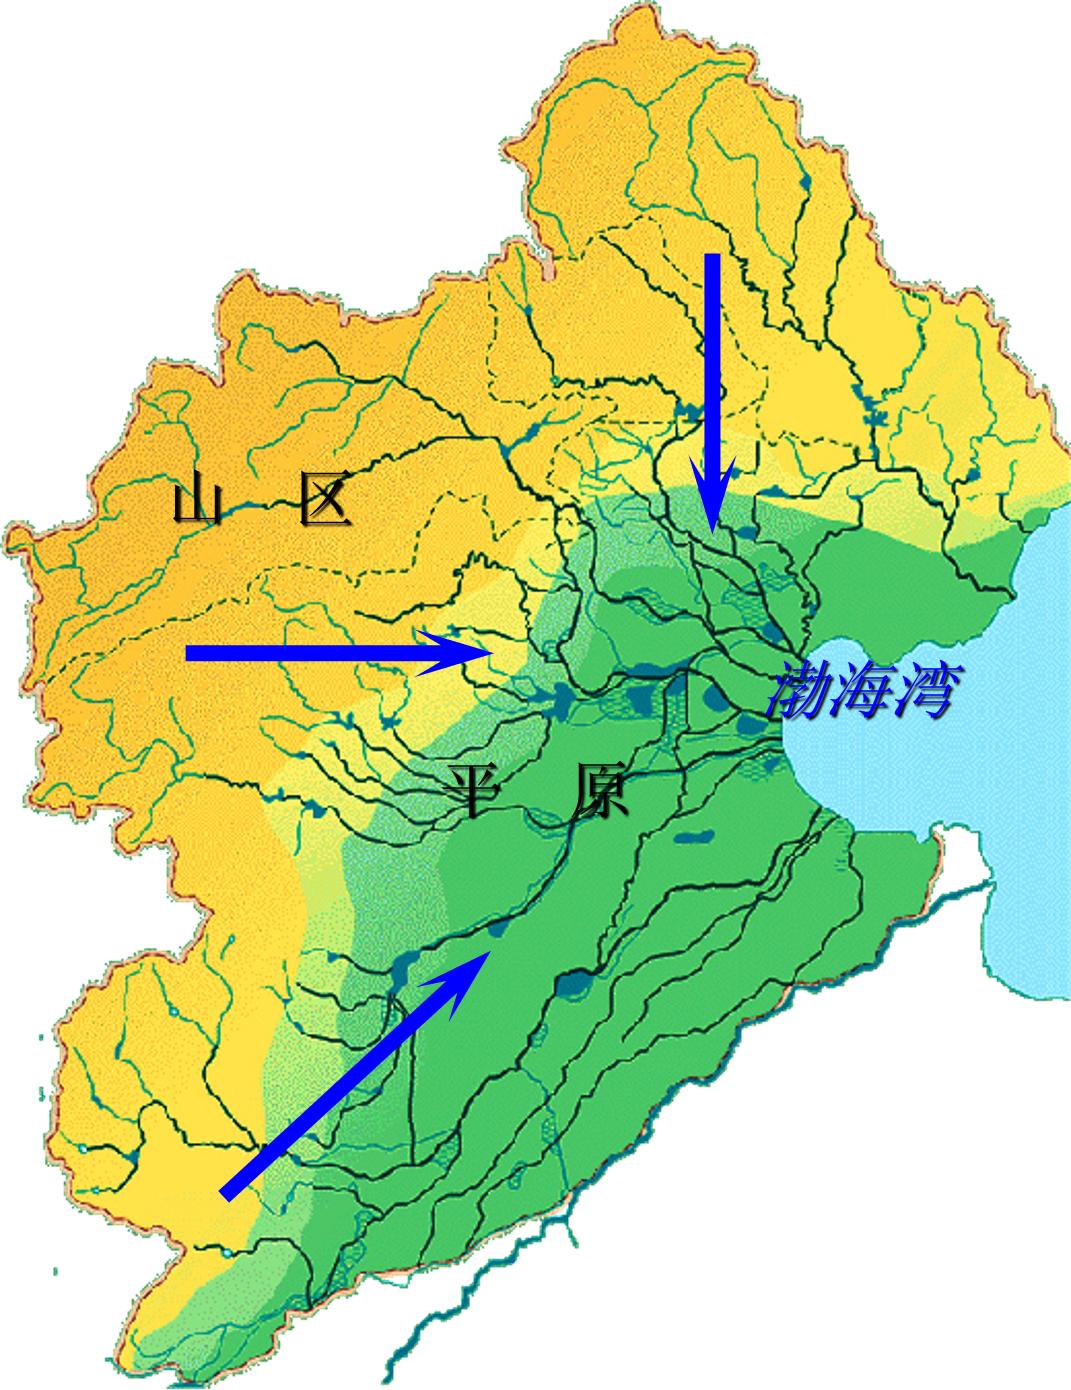 燕山的众多支流是扇面水系呈扇形分布海河流域地形西高东低水汇到